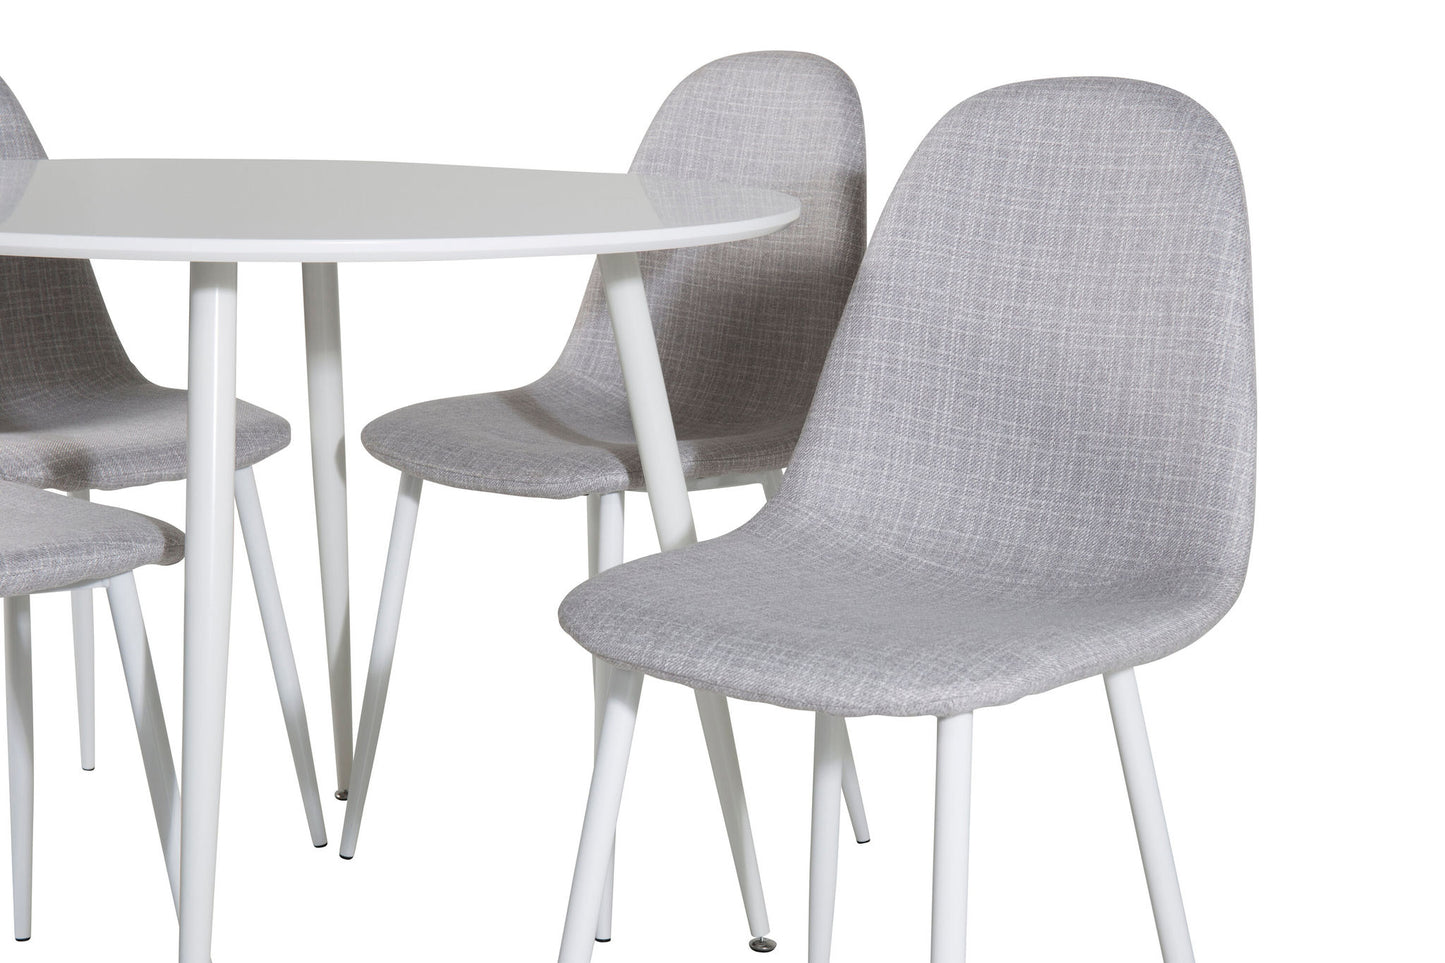 Plaza Rundt Bord 100 cm - Hvid top / Hvide ben+ Polar Spisebordsstol - Hvide ben - Lysegråt stof